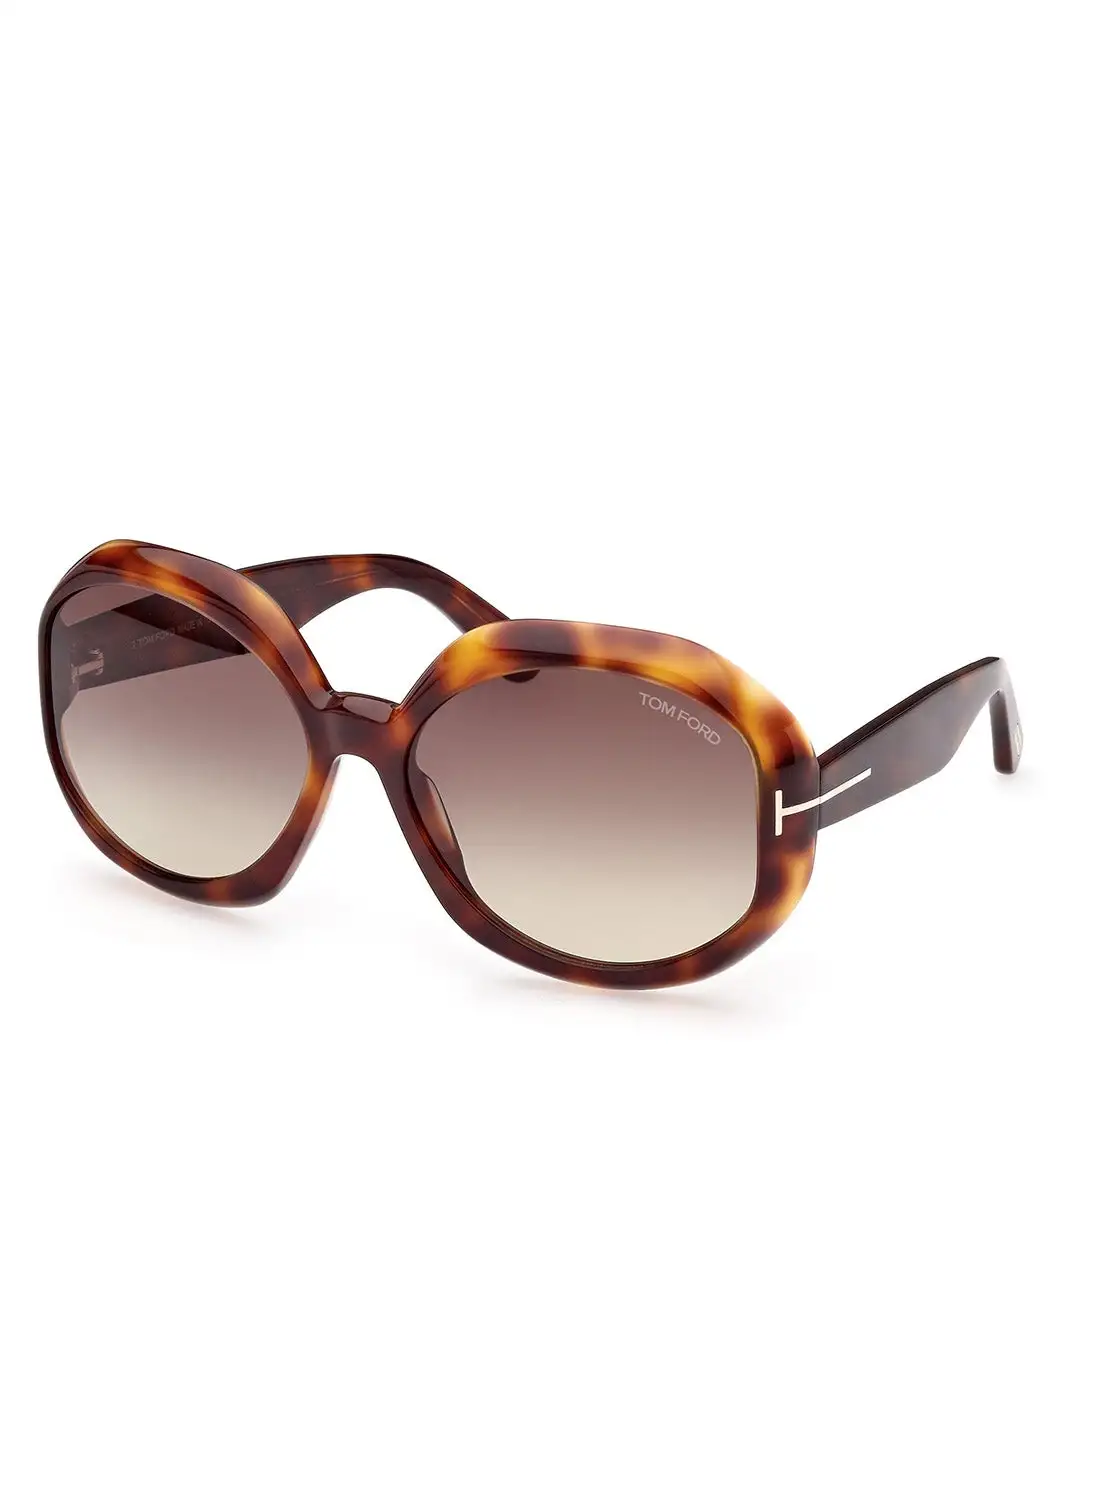 TOM FORD Women's UV Protection Asymmetrical Sunglasses - FT101152B62 - Lens Size: 62 Mm